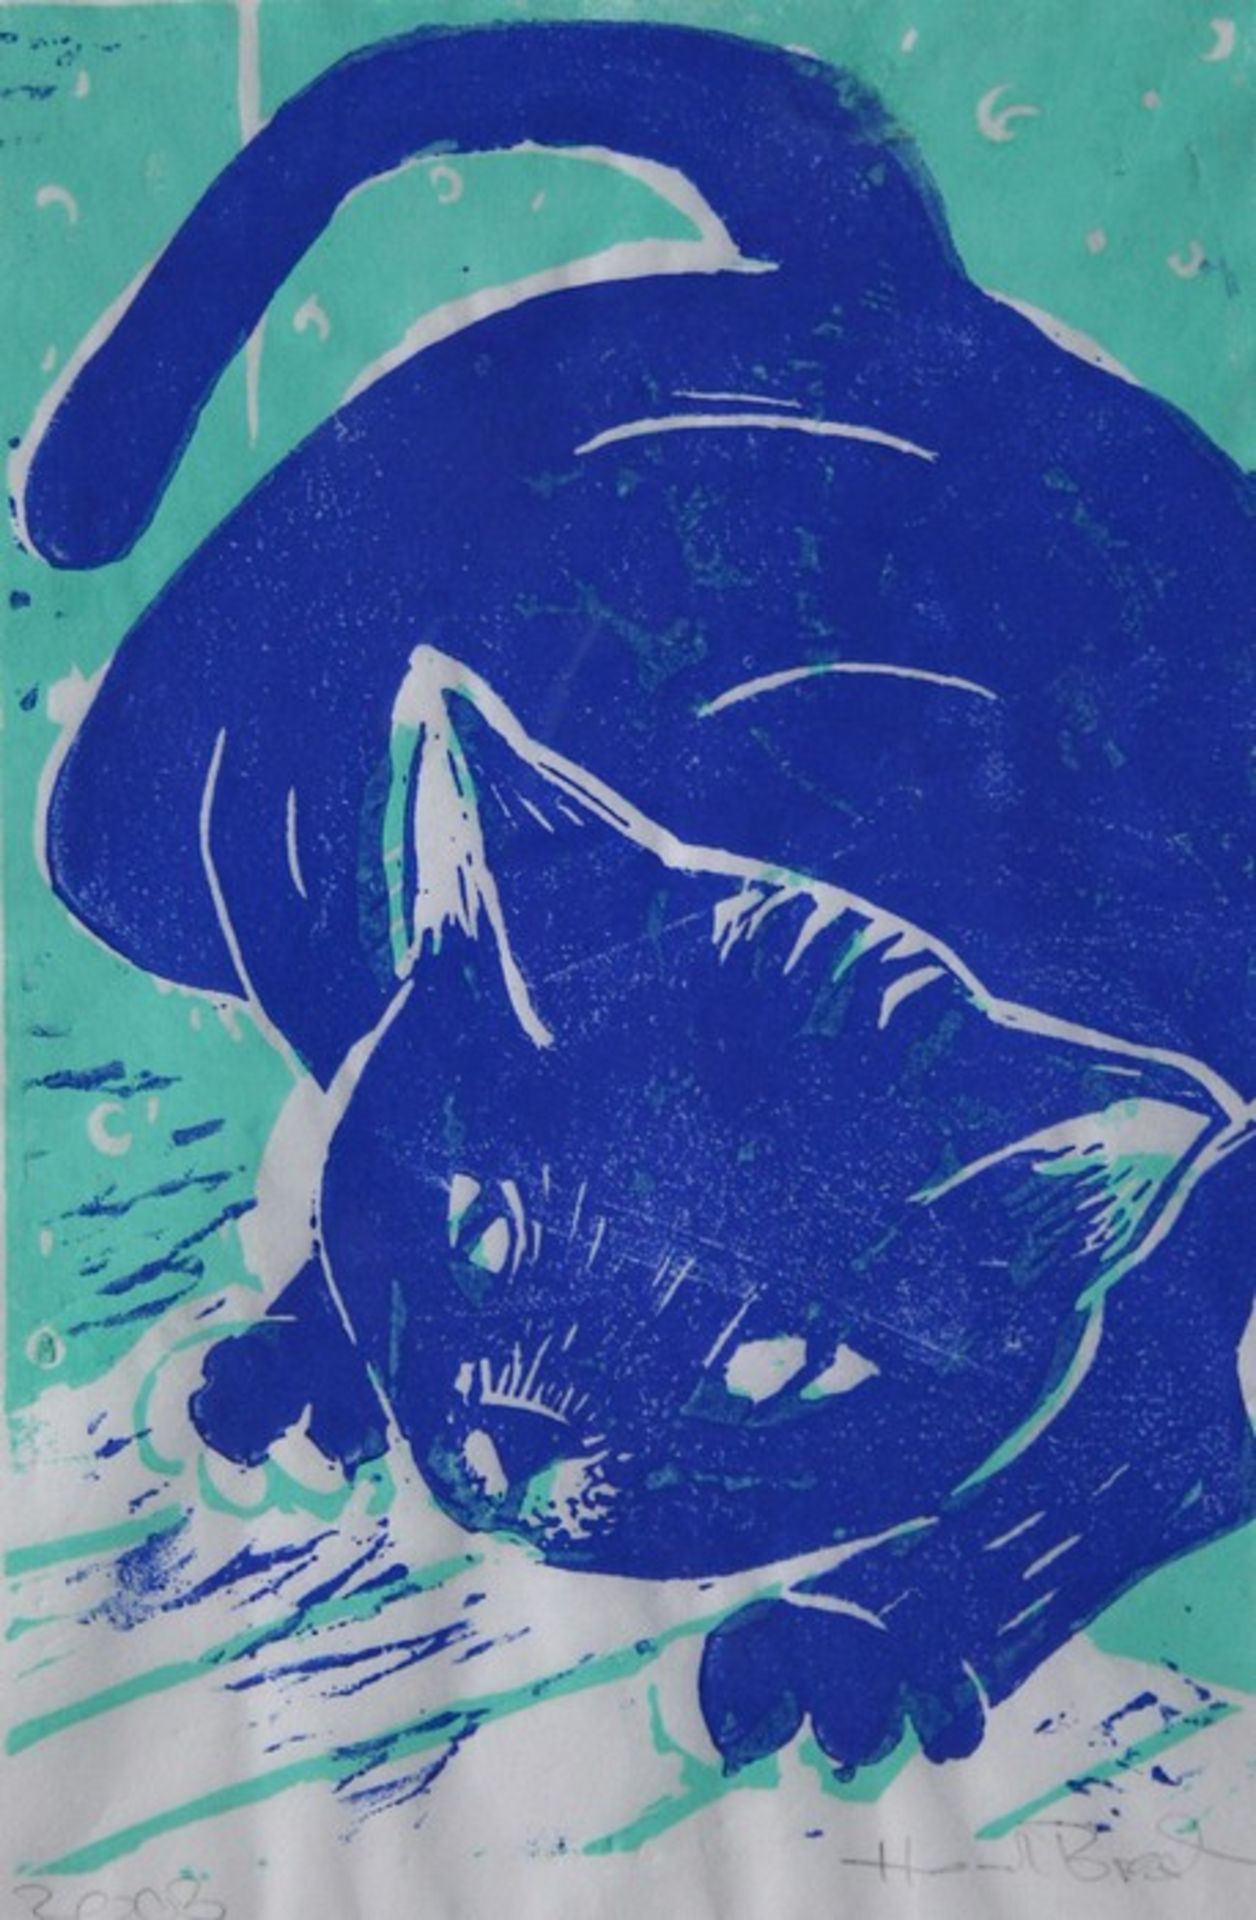 Siebdruck von Renate Haimerl-Brosch (Regensburger Künstlerin) "Katze", r.u. Bleistiftsignatur,